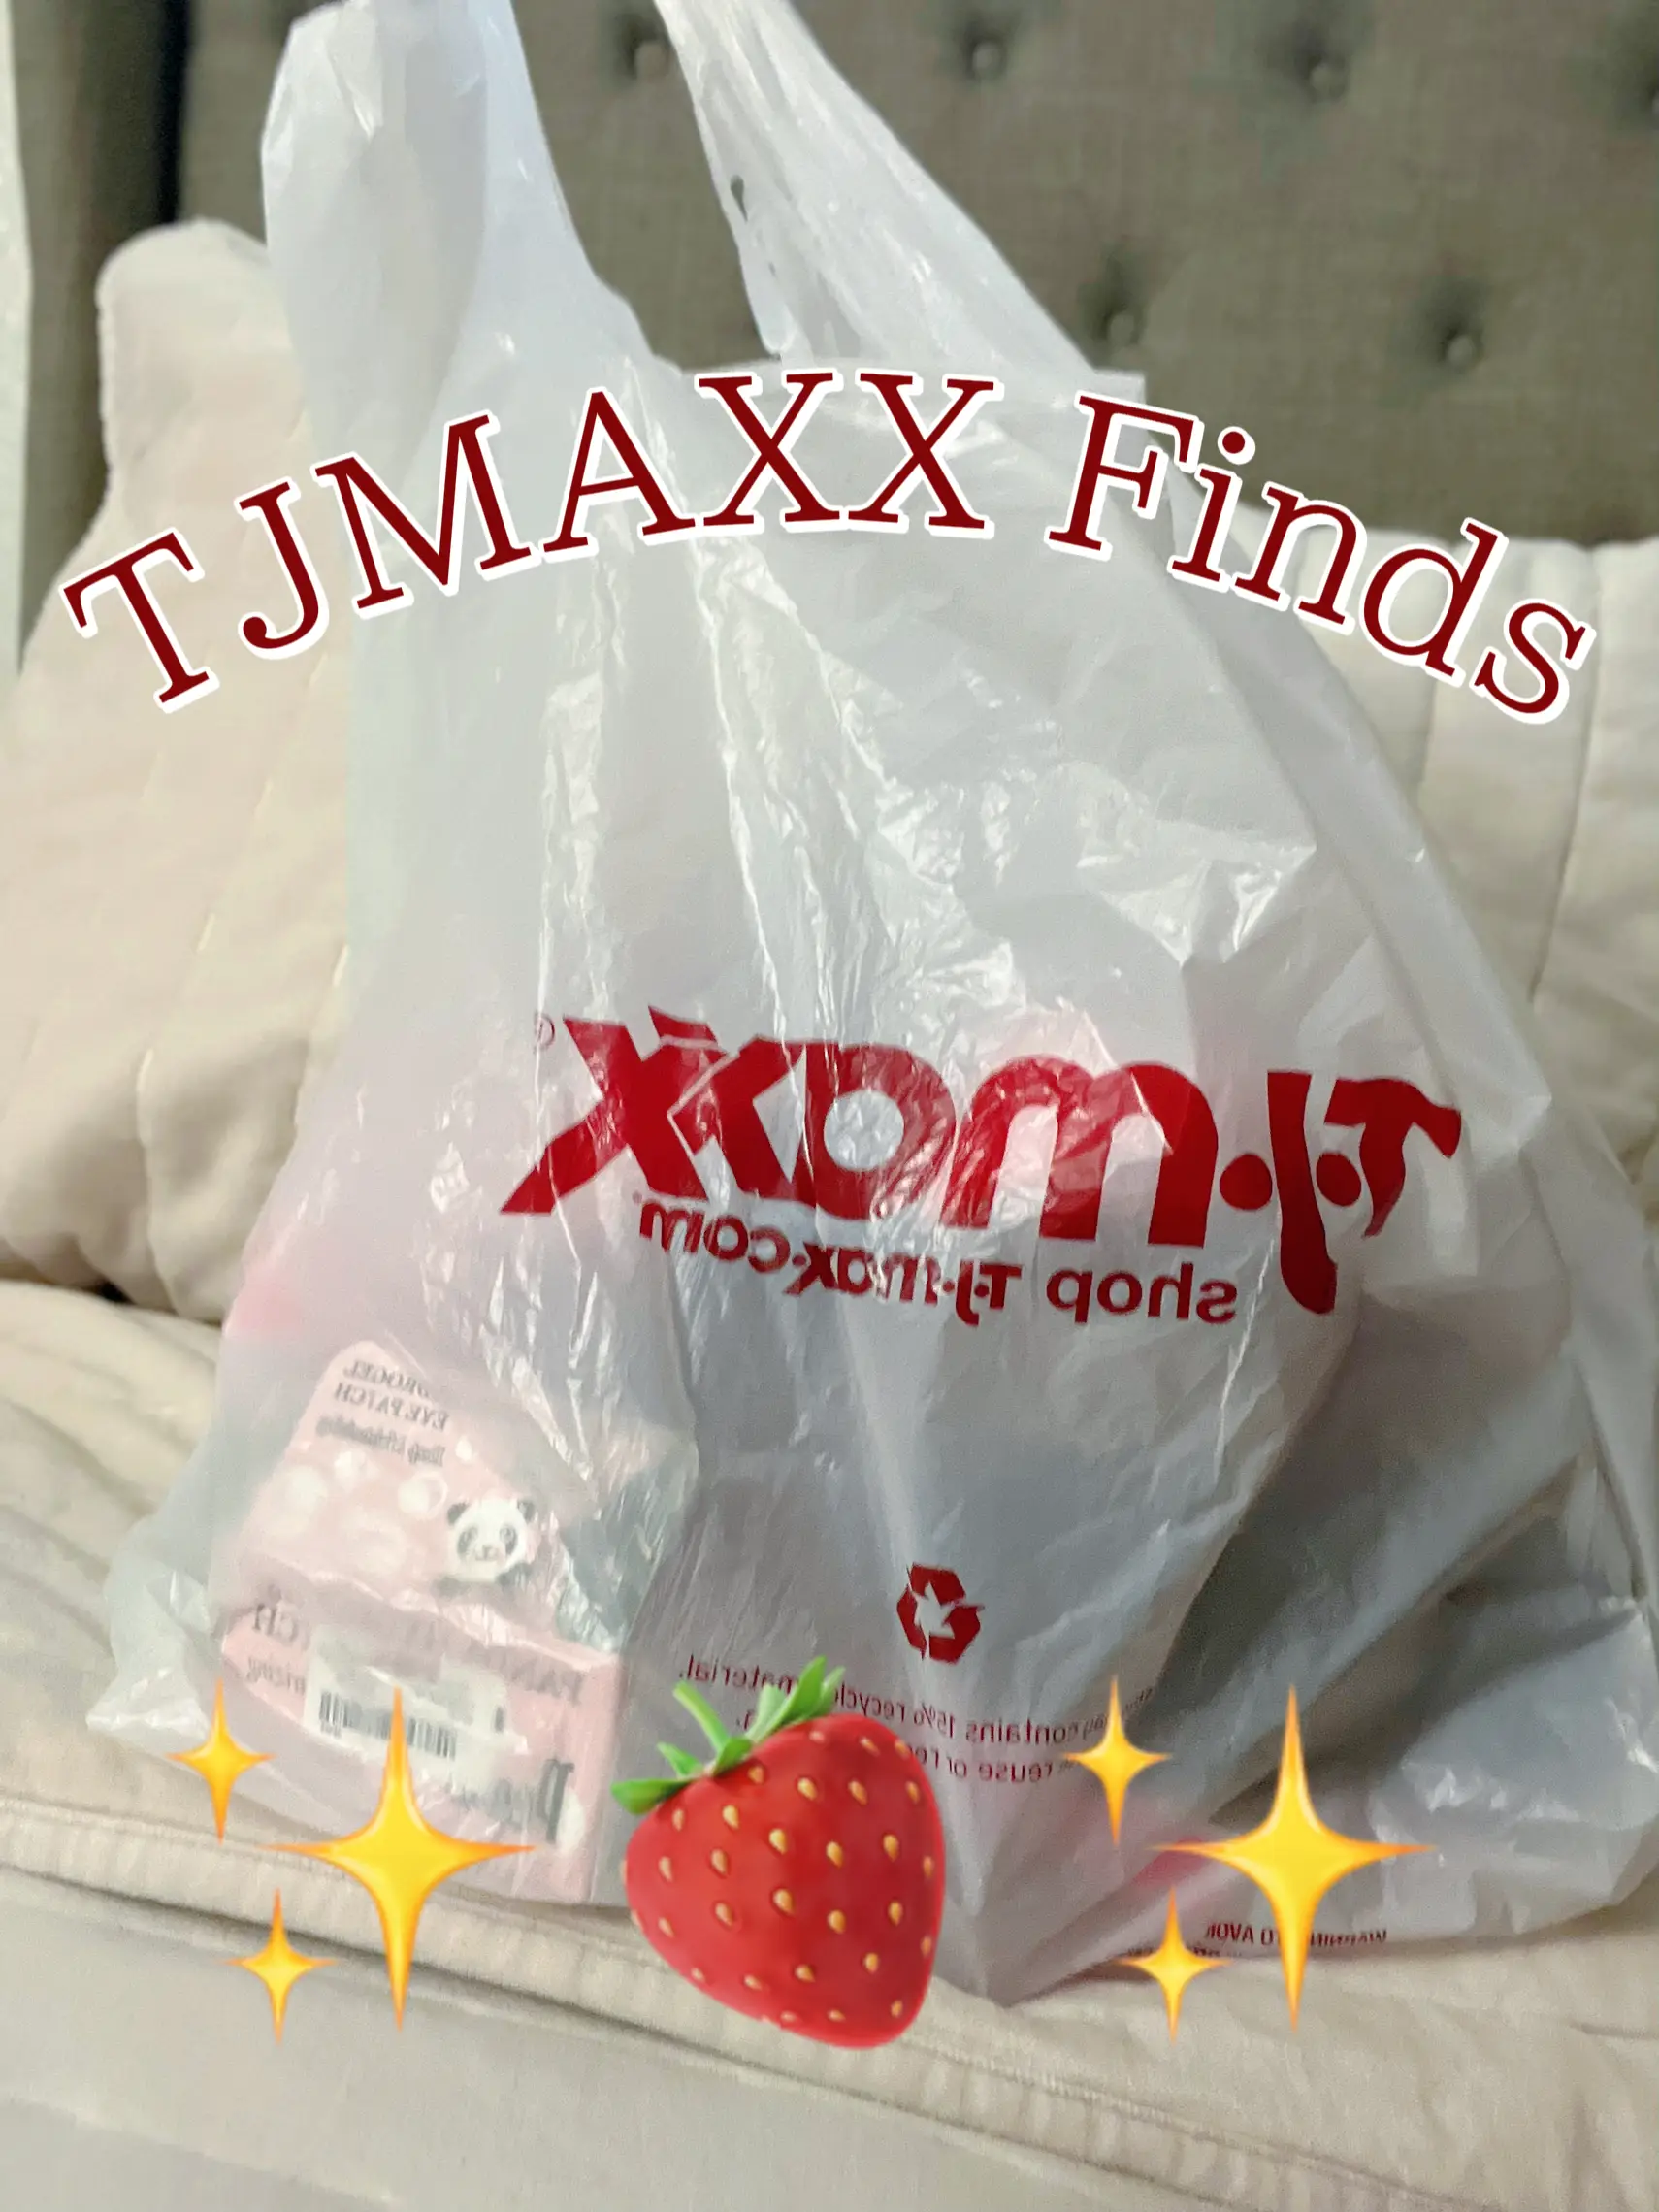 What's new @T.J.Maxx? Steve Madden purses! #tjmaxx #tjmaxxfinds #tjmax, purses